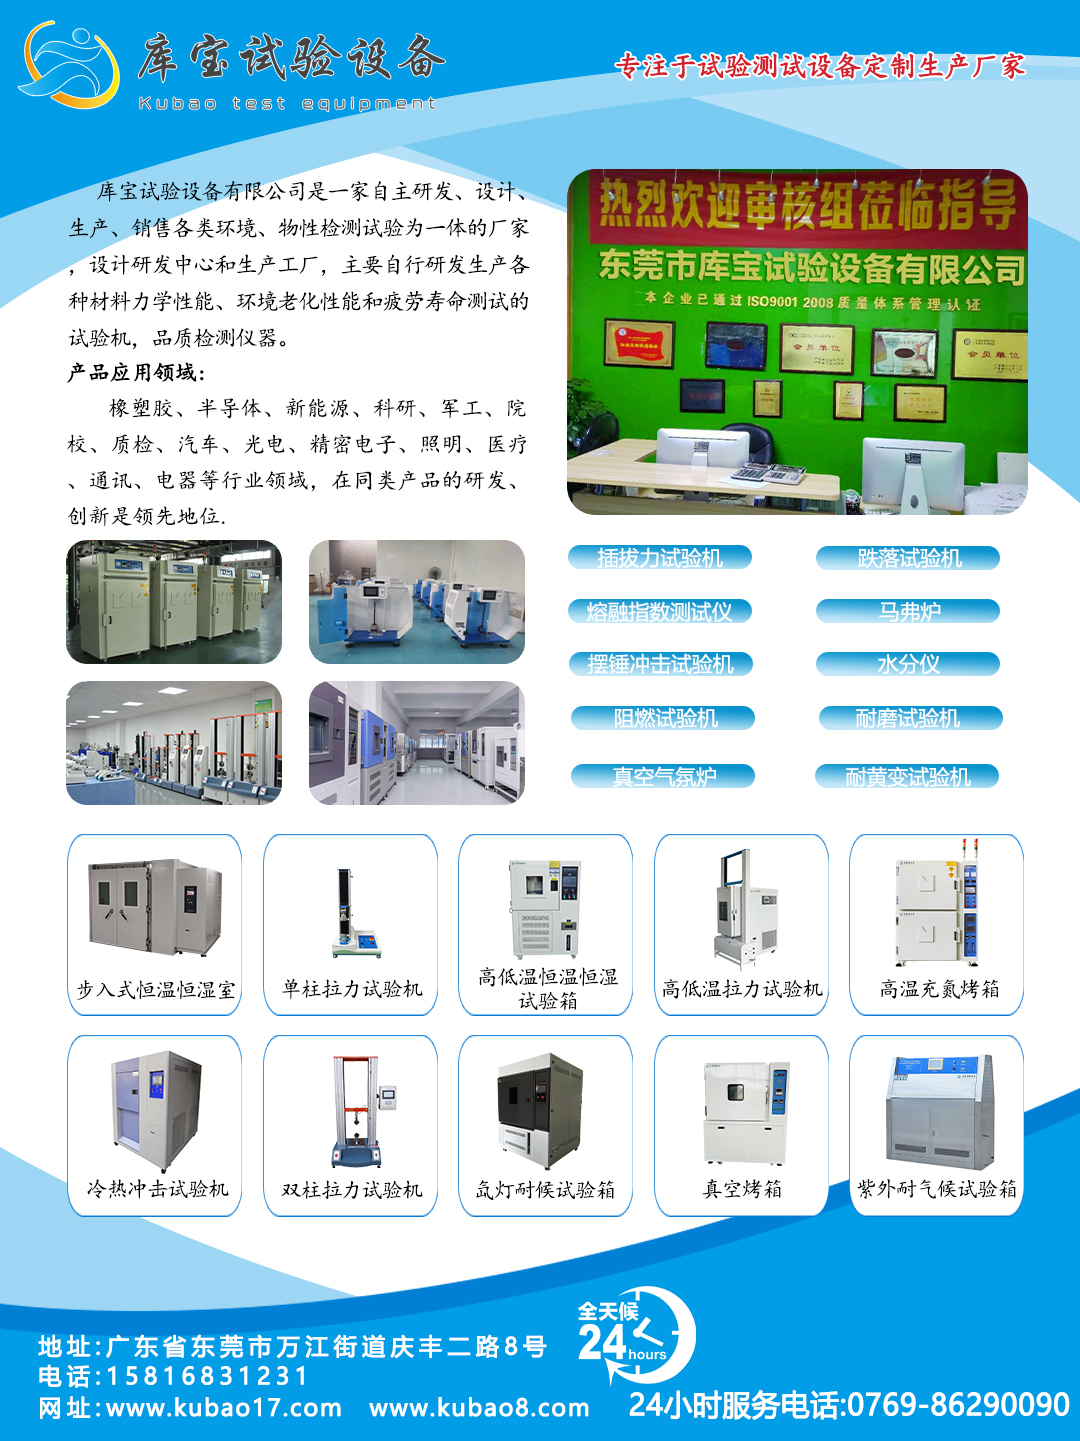 惠州橡胶拉力强度试验机公司介绍